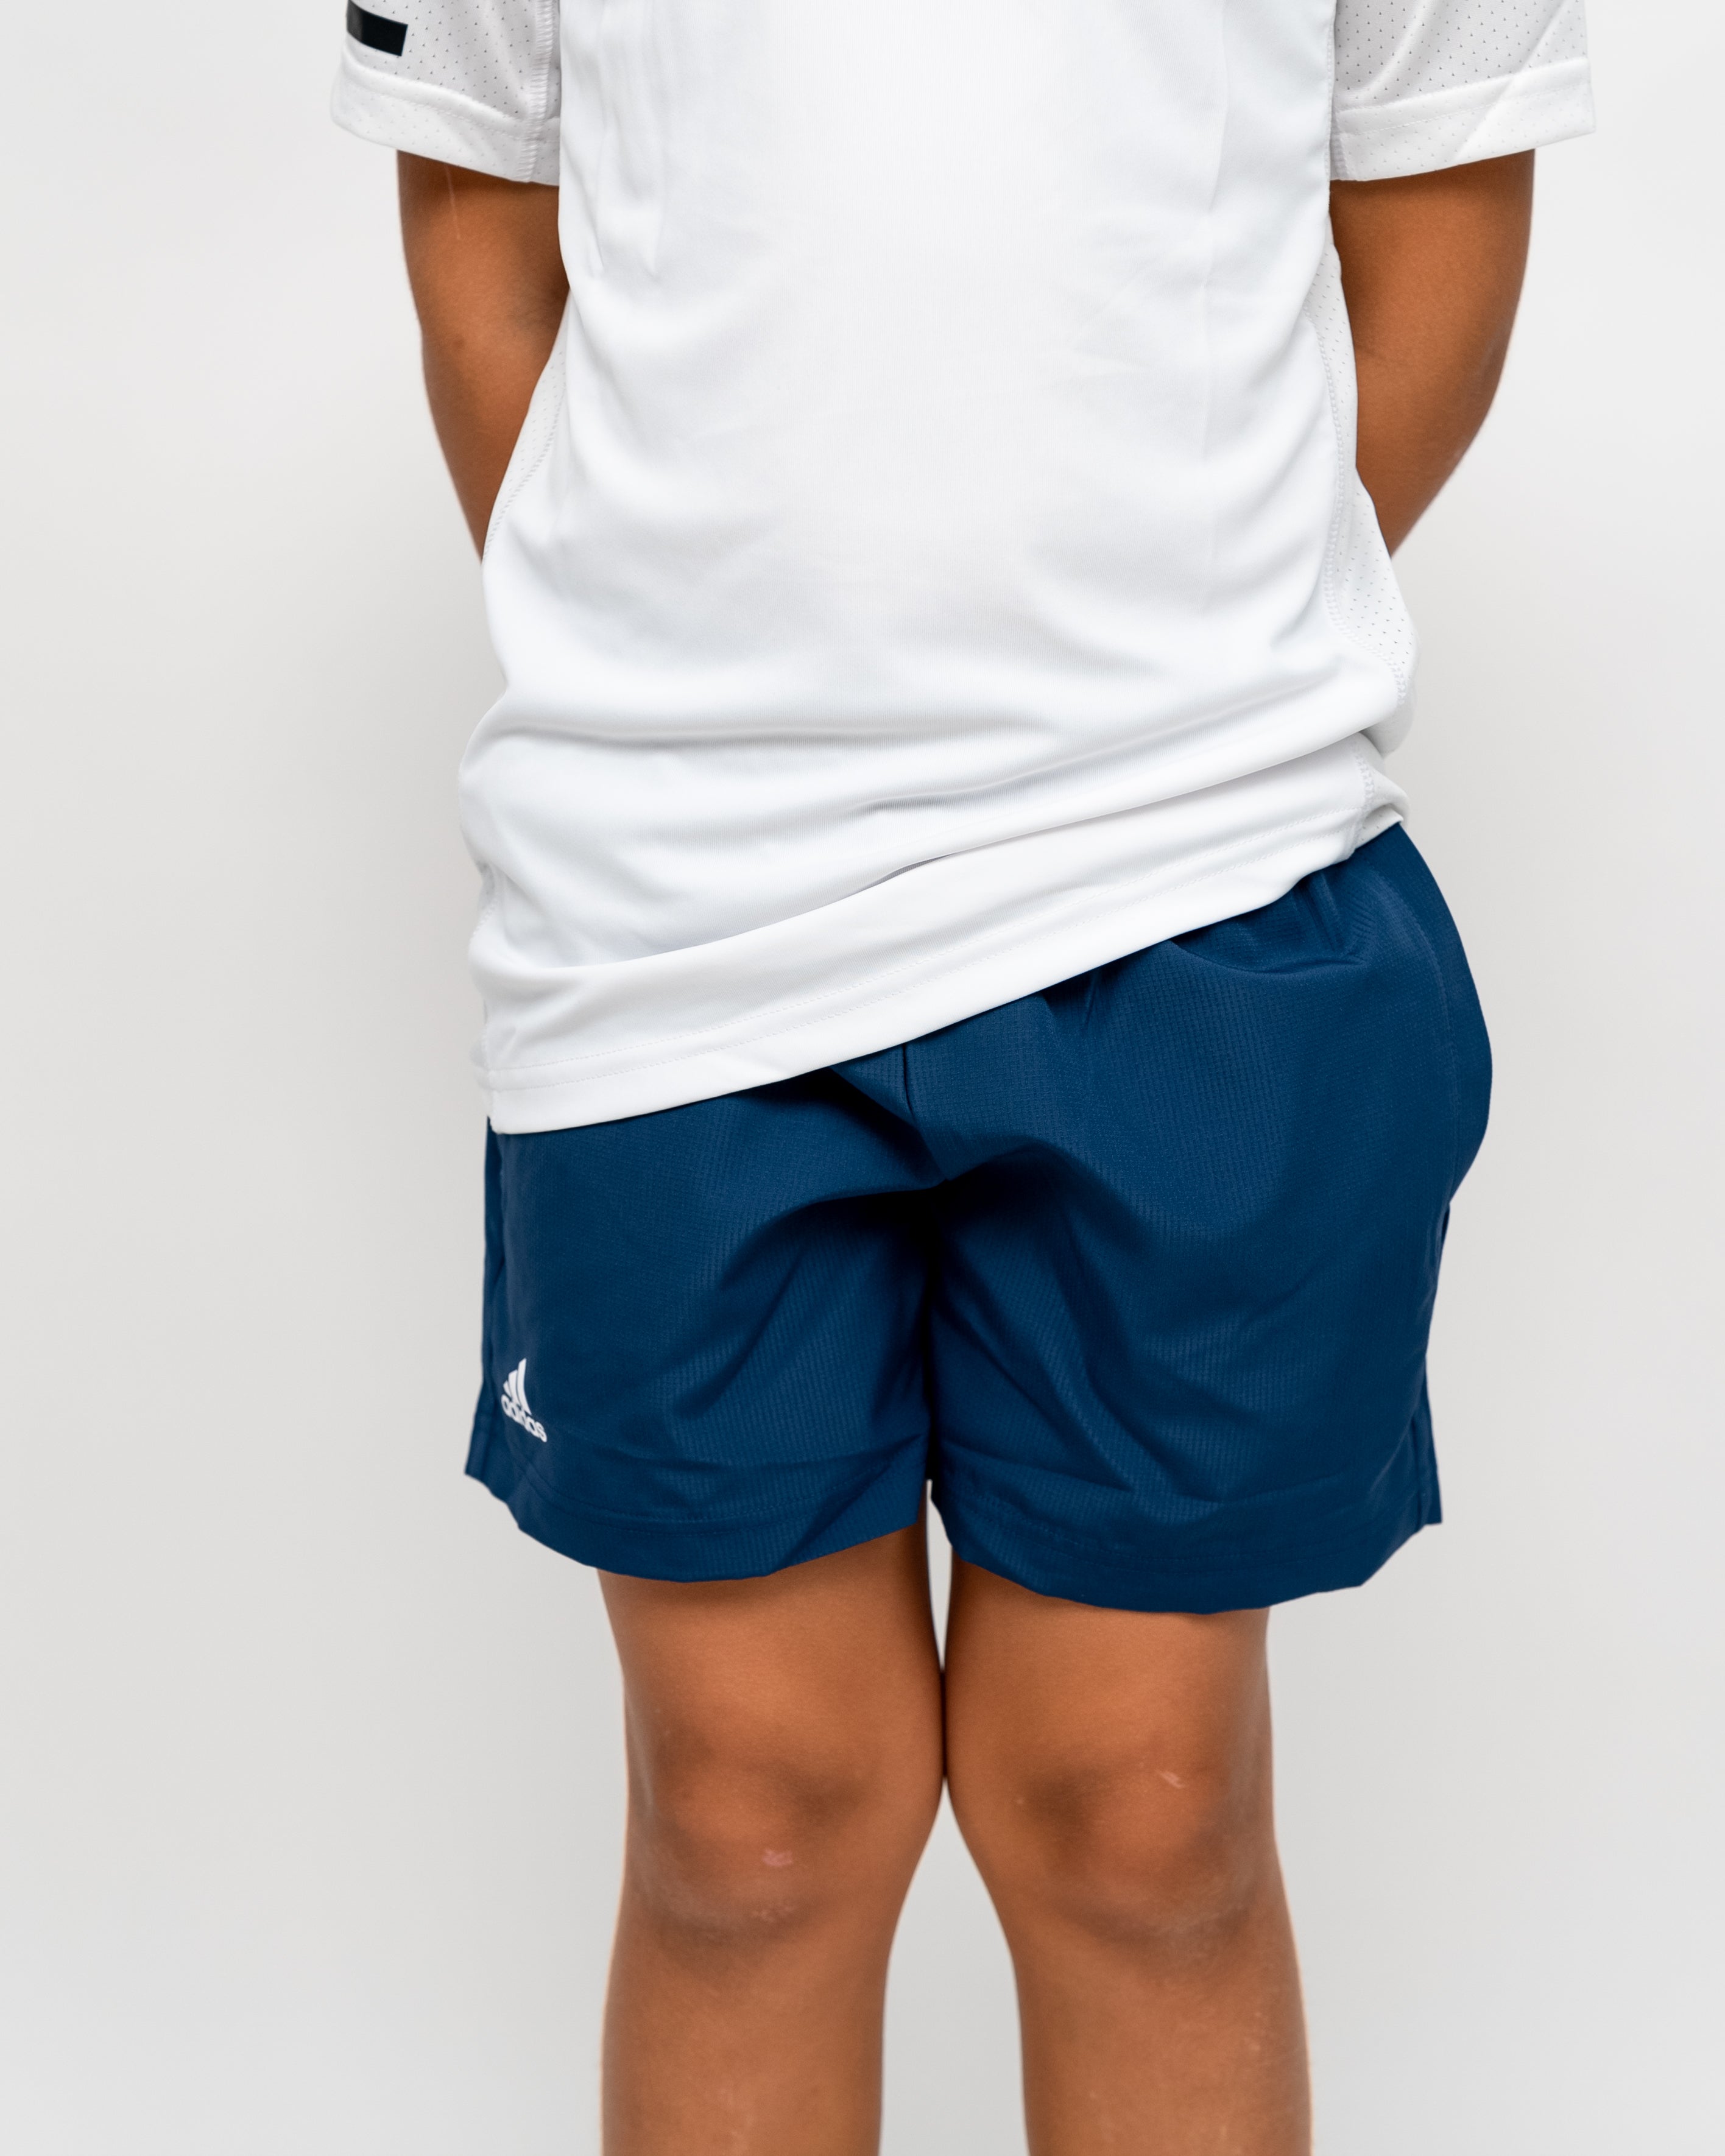 Adidas Boys Club Shorts